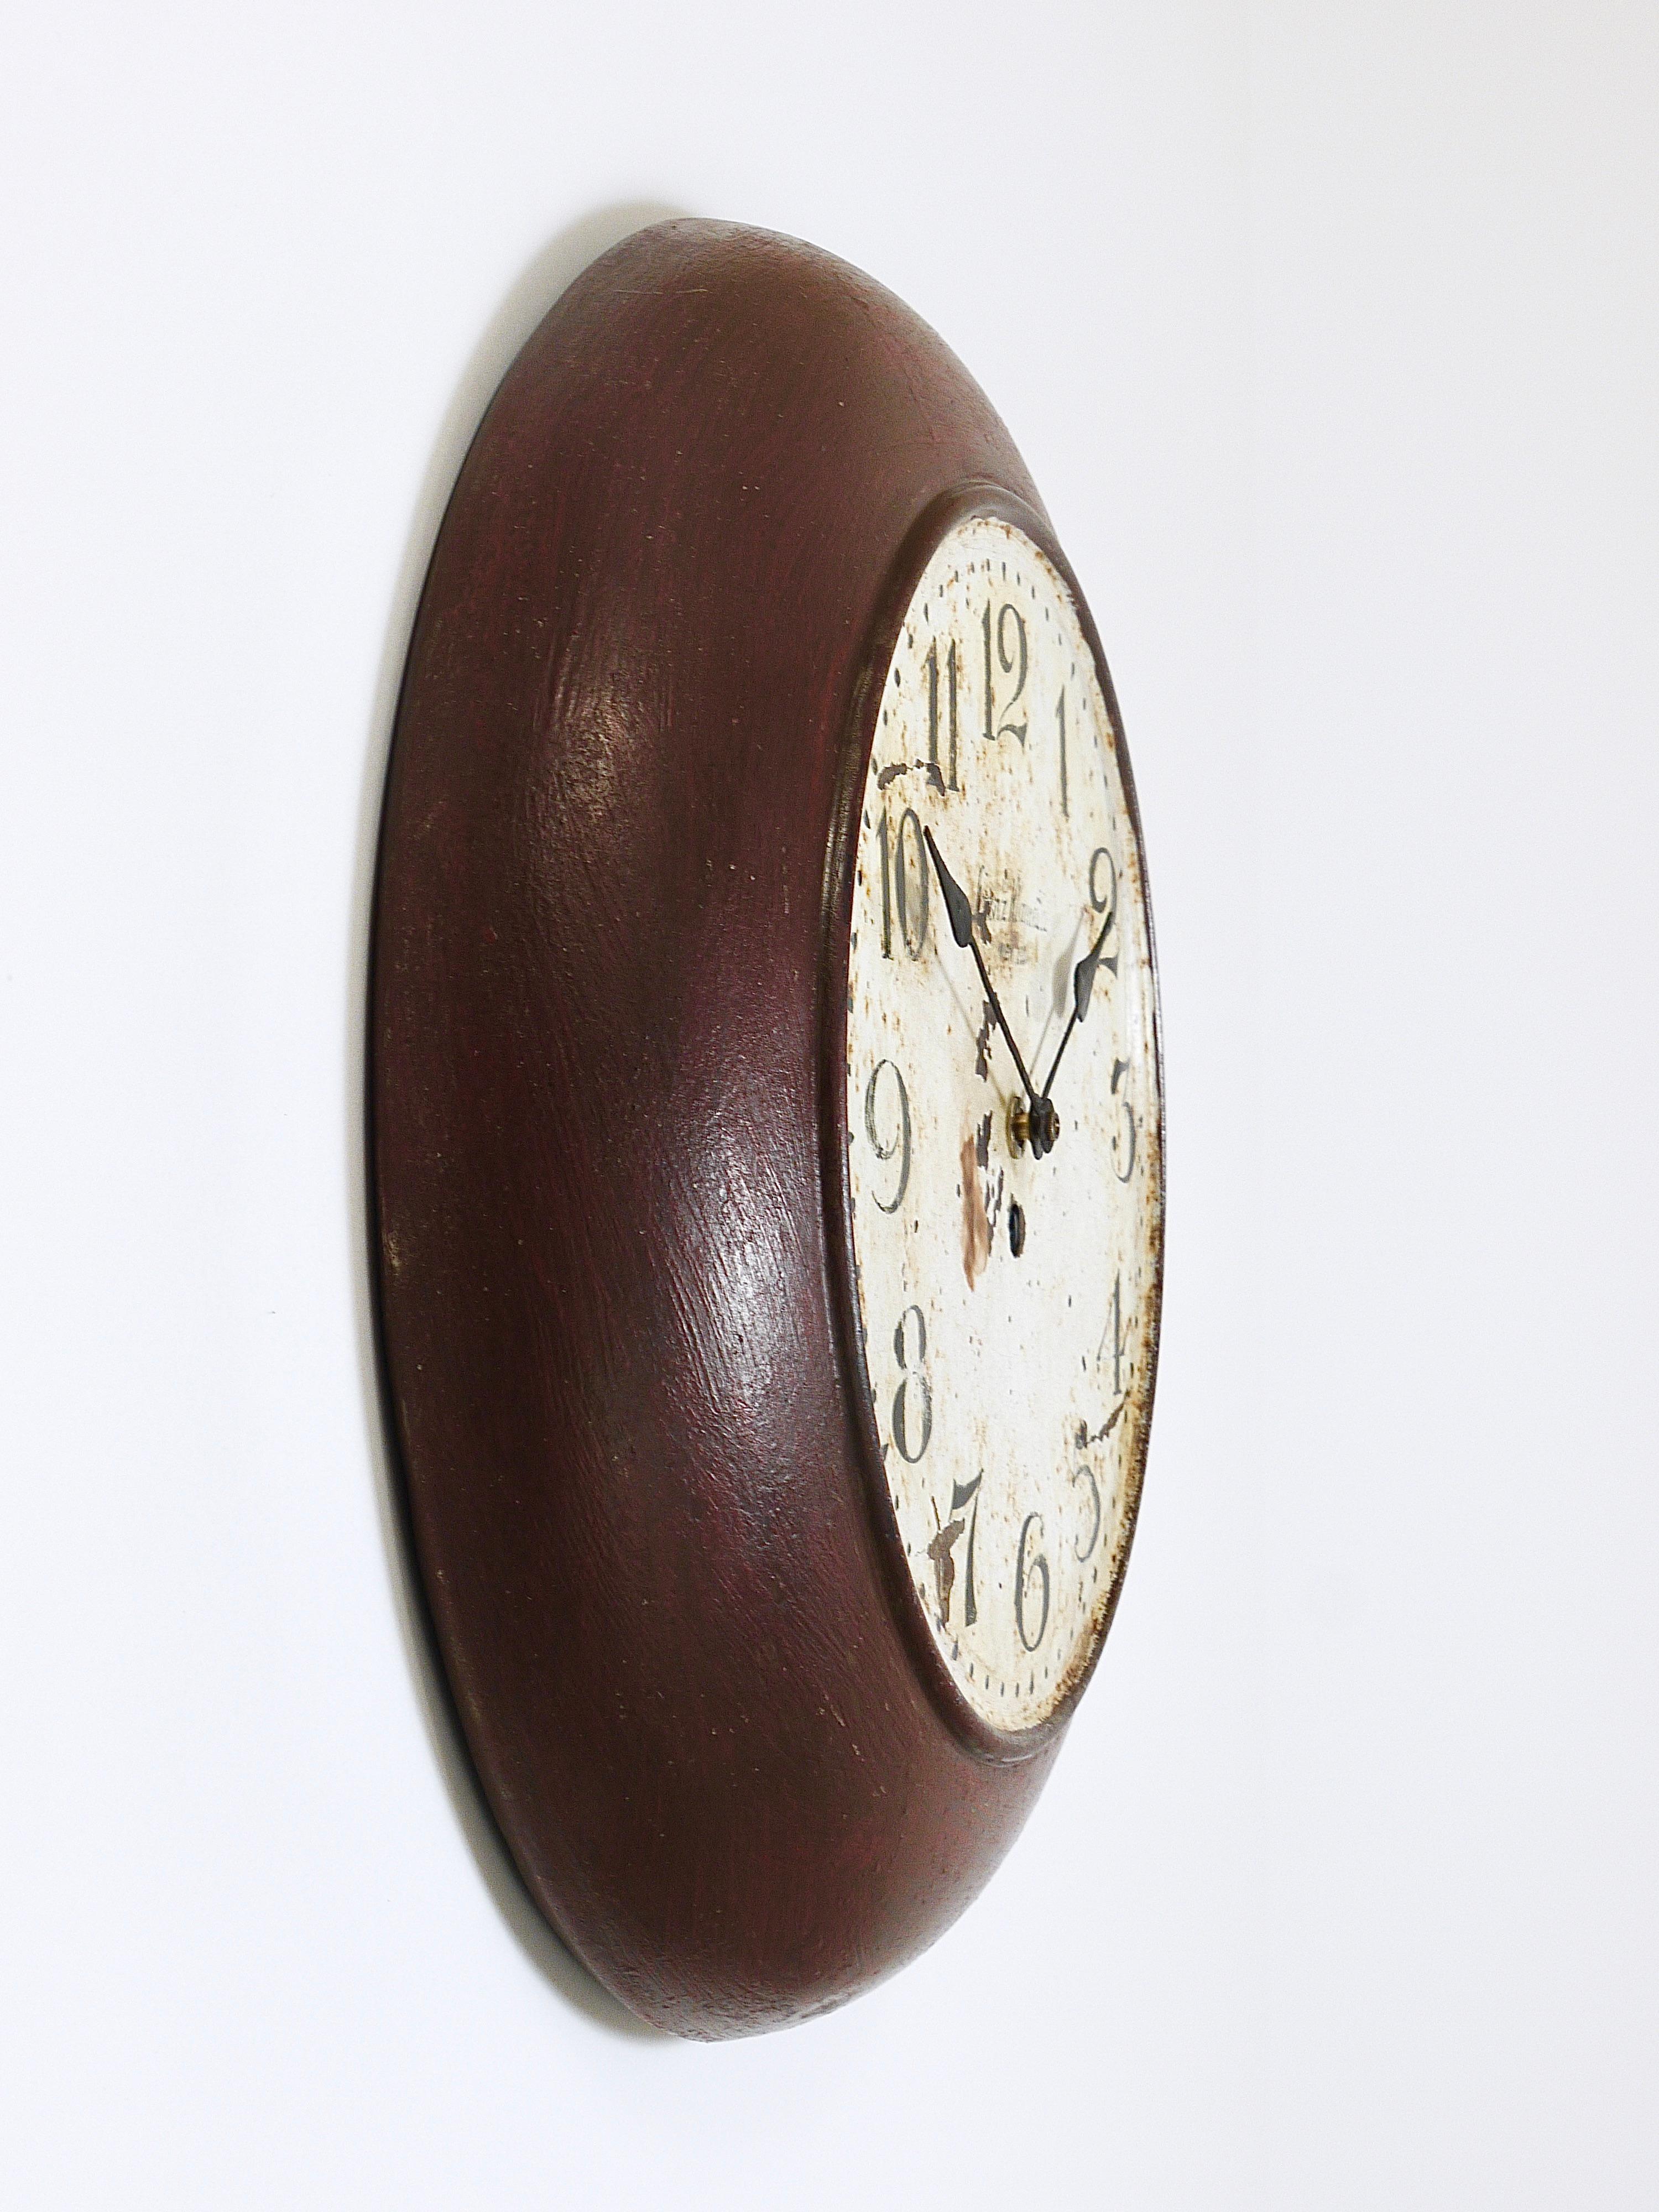 Eine antike Wanduhr mit einem Durchmesser von 14,5 Zoll aus den 1920er Jahren, hergestellt vom Uhrmacher Franz Klameth, Wien, Österreich. Solche Uhren wurden ursprünglich in öffentlichen Ämtern, Fabriken oder Bahnhöfen verwendet. Aus Metall mit